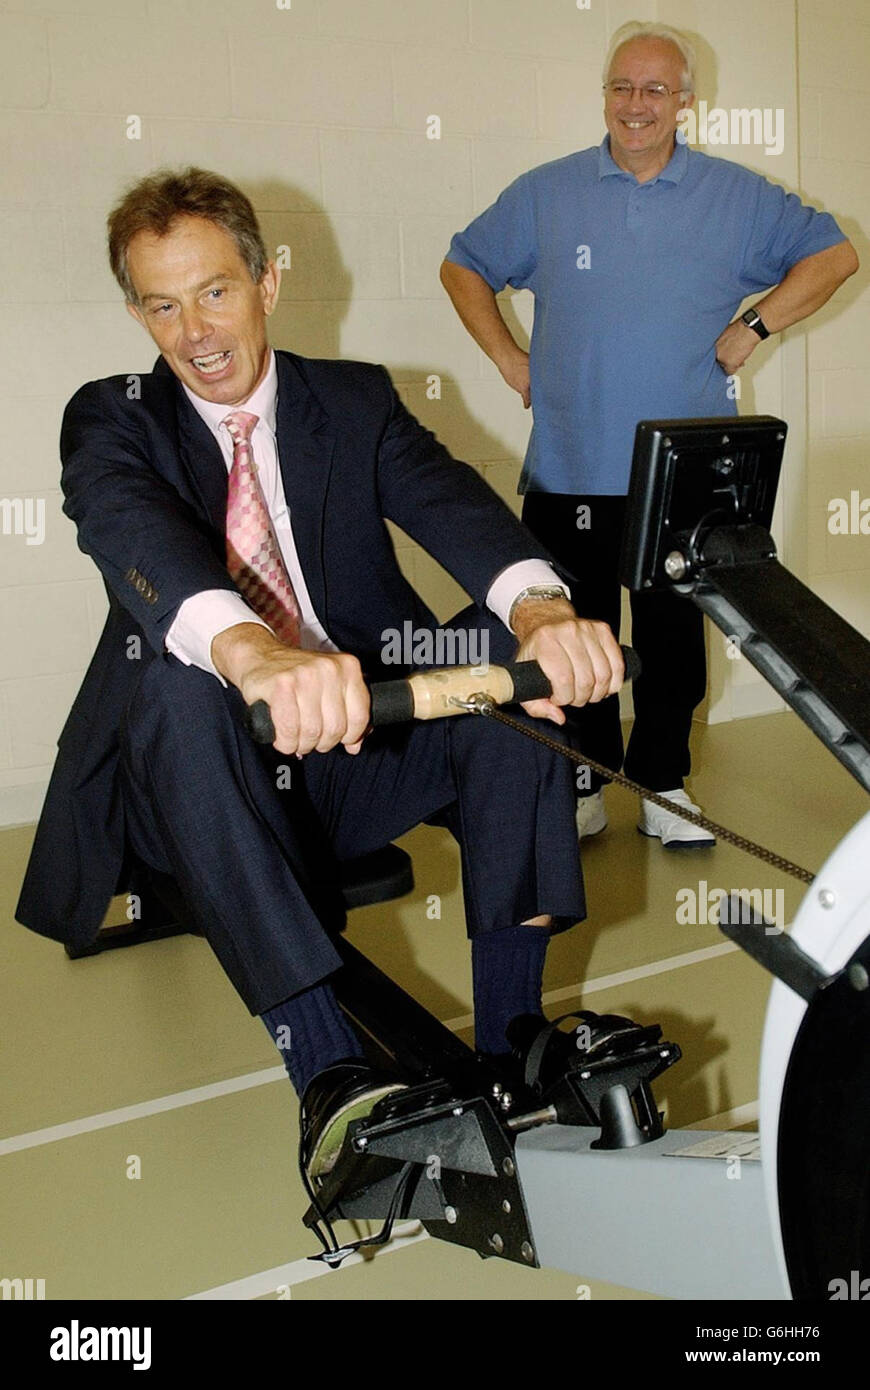 Il primo ministro Tony Blair è messo attraverso i suoi passi su una macchina di canottaggio durante una visita all'unità cardiaca al Royal Bournemouth Hospital. Foto Stock